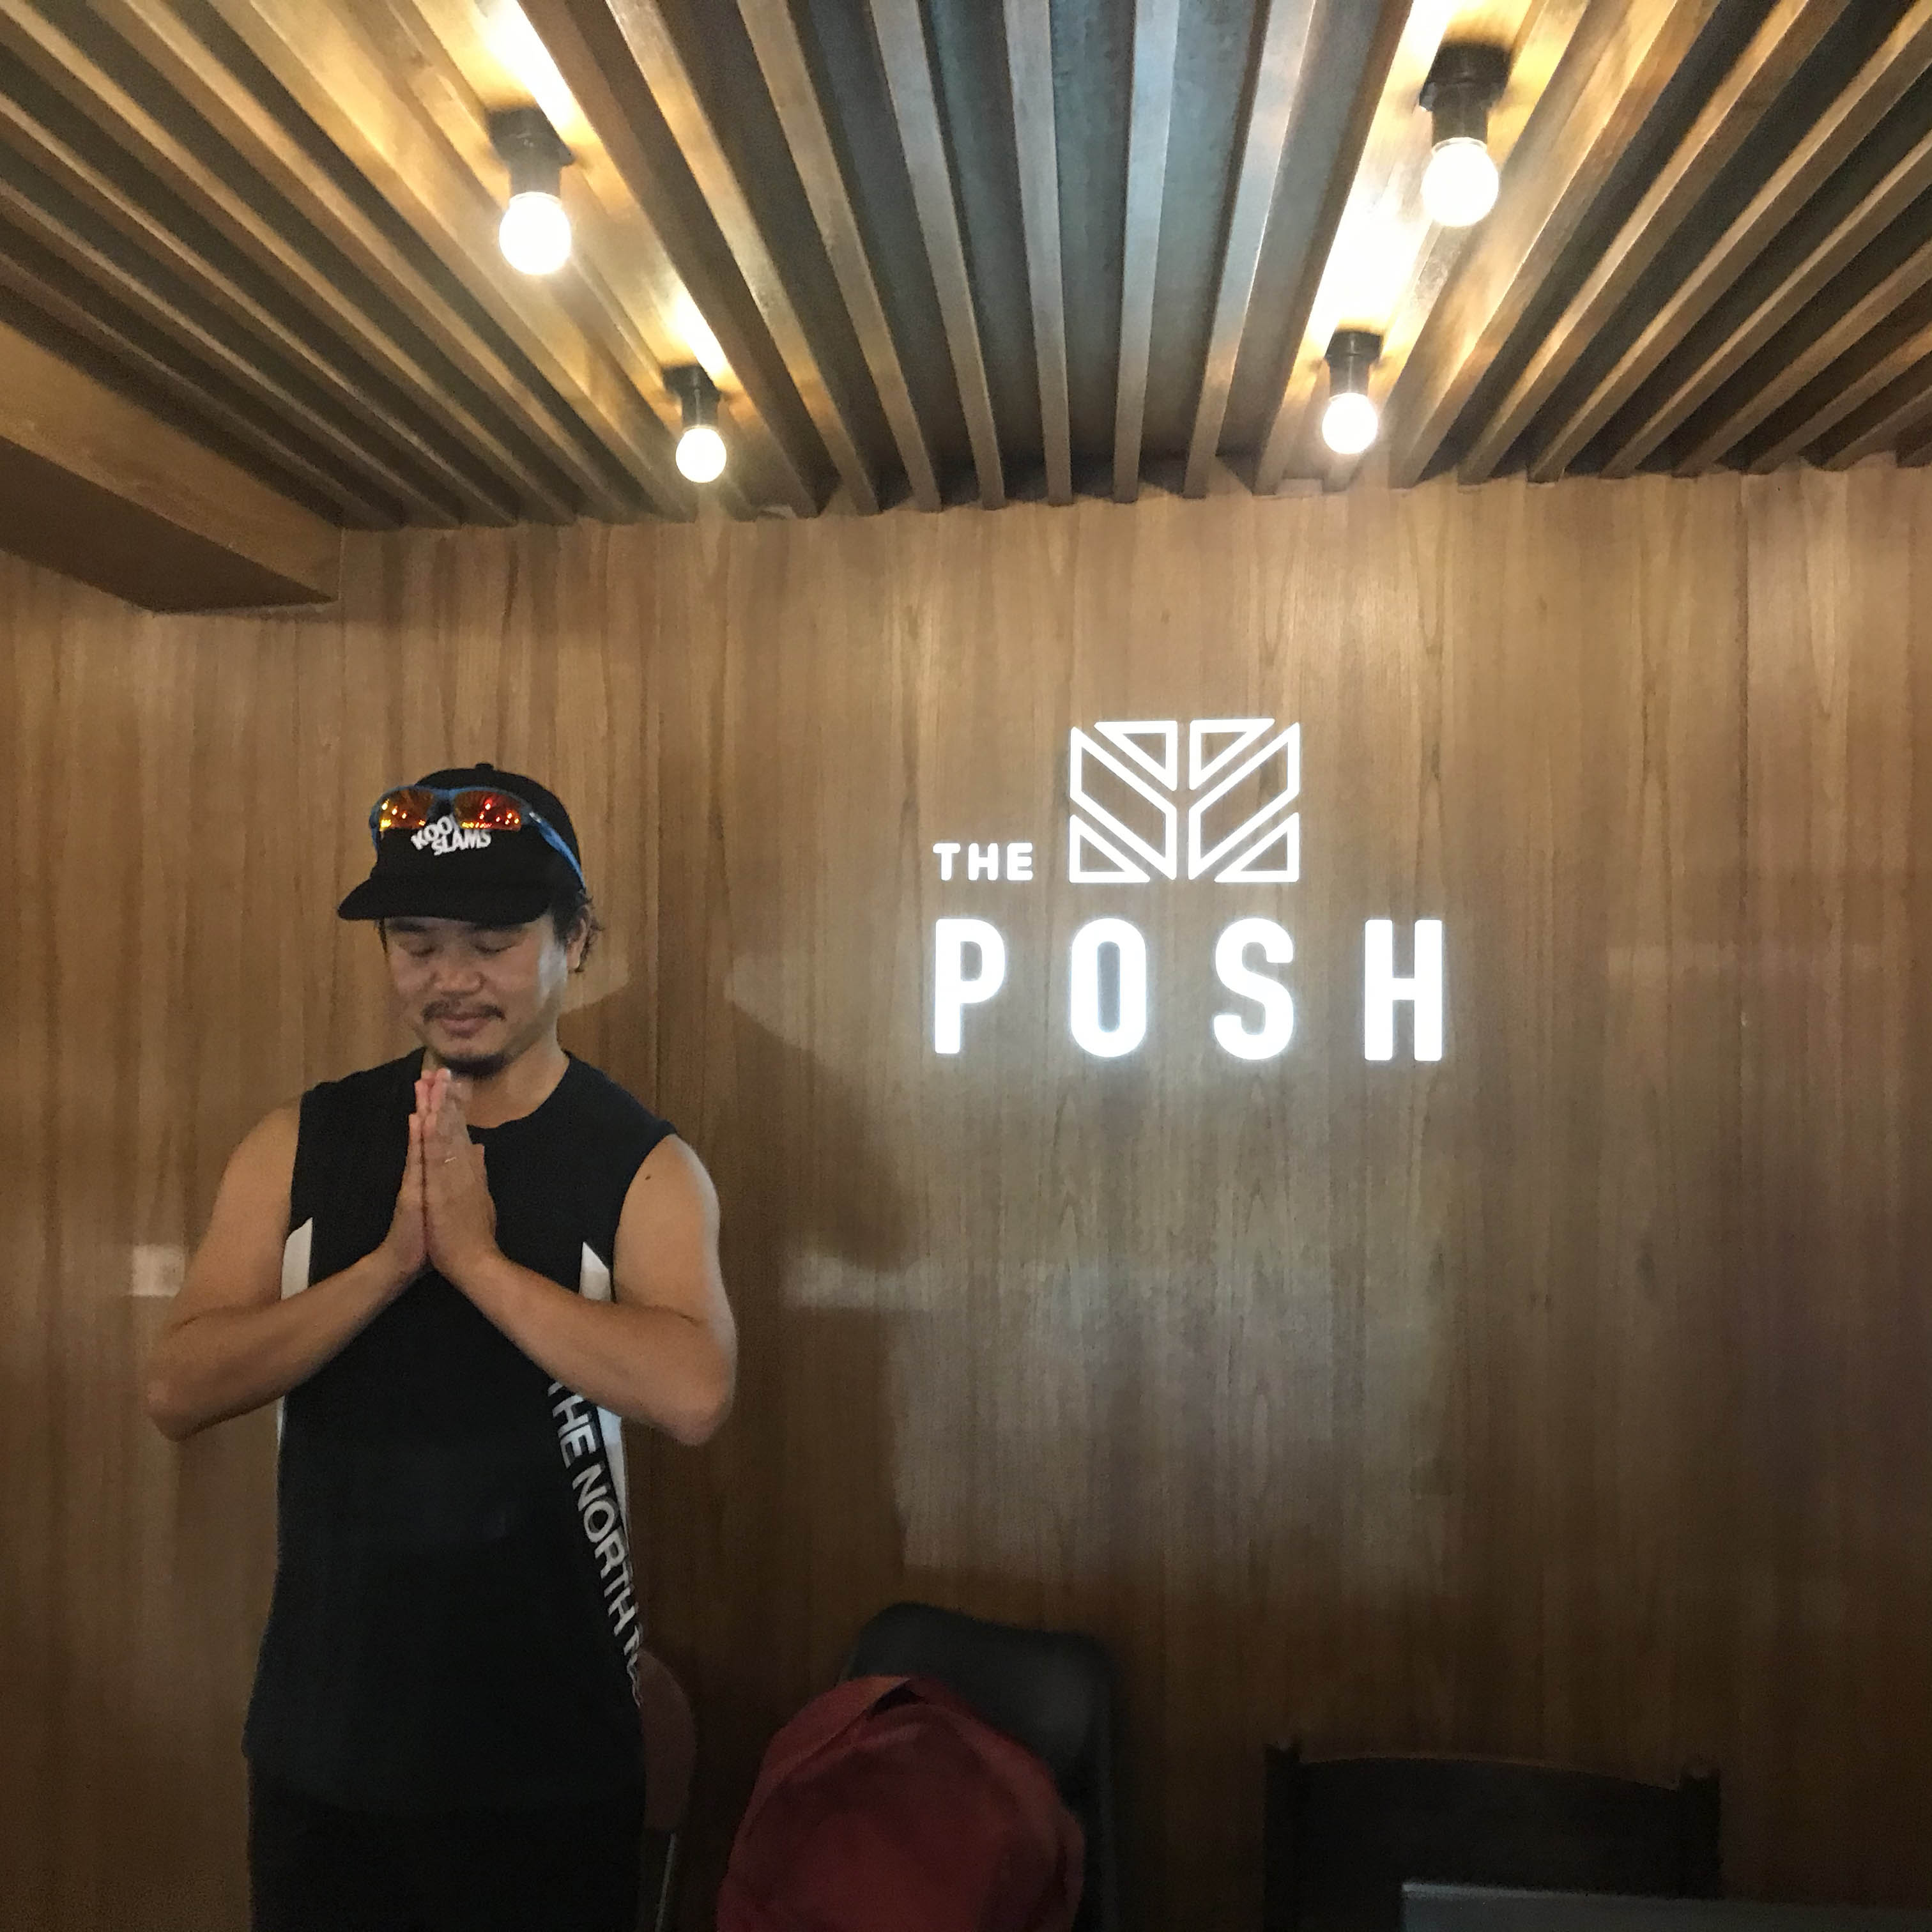 バンコク旅2019。宿泊先初日は「THE POSH」ラグジュアリーホステルで。